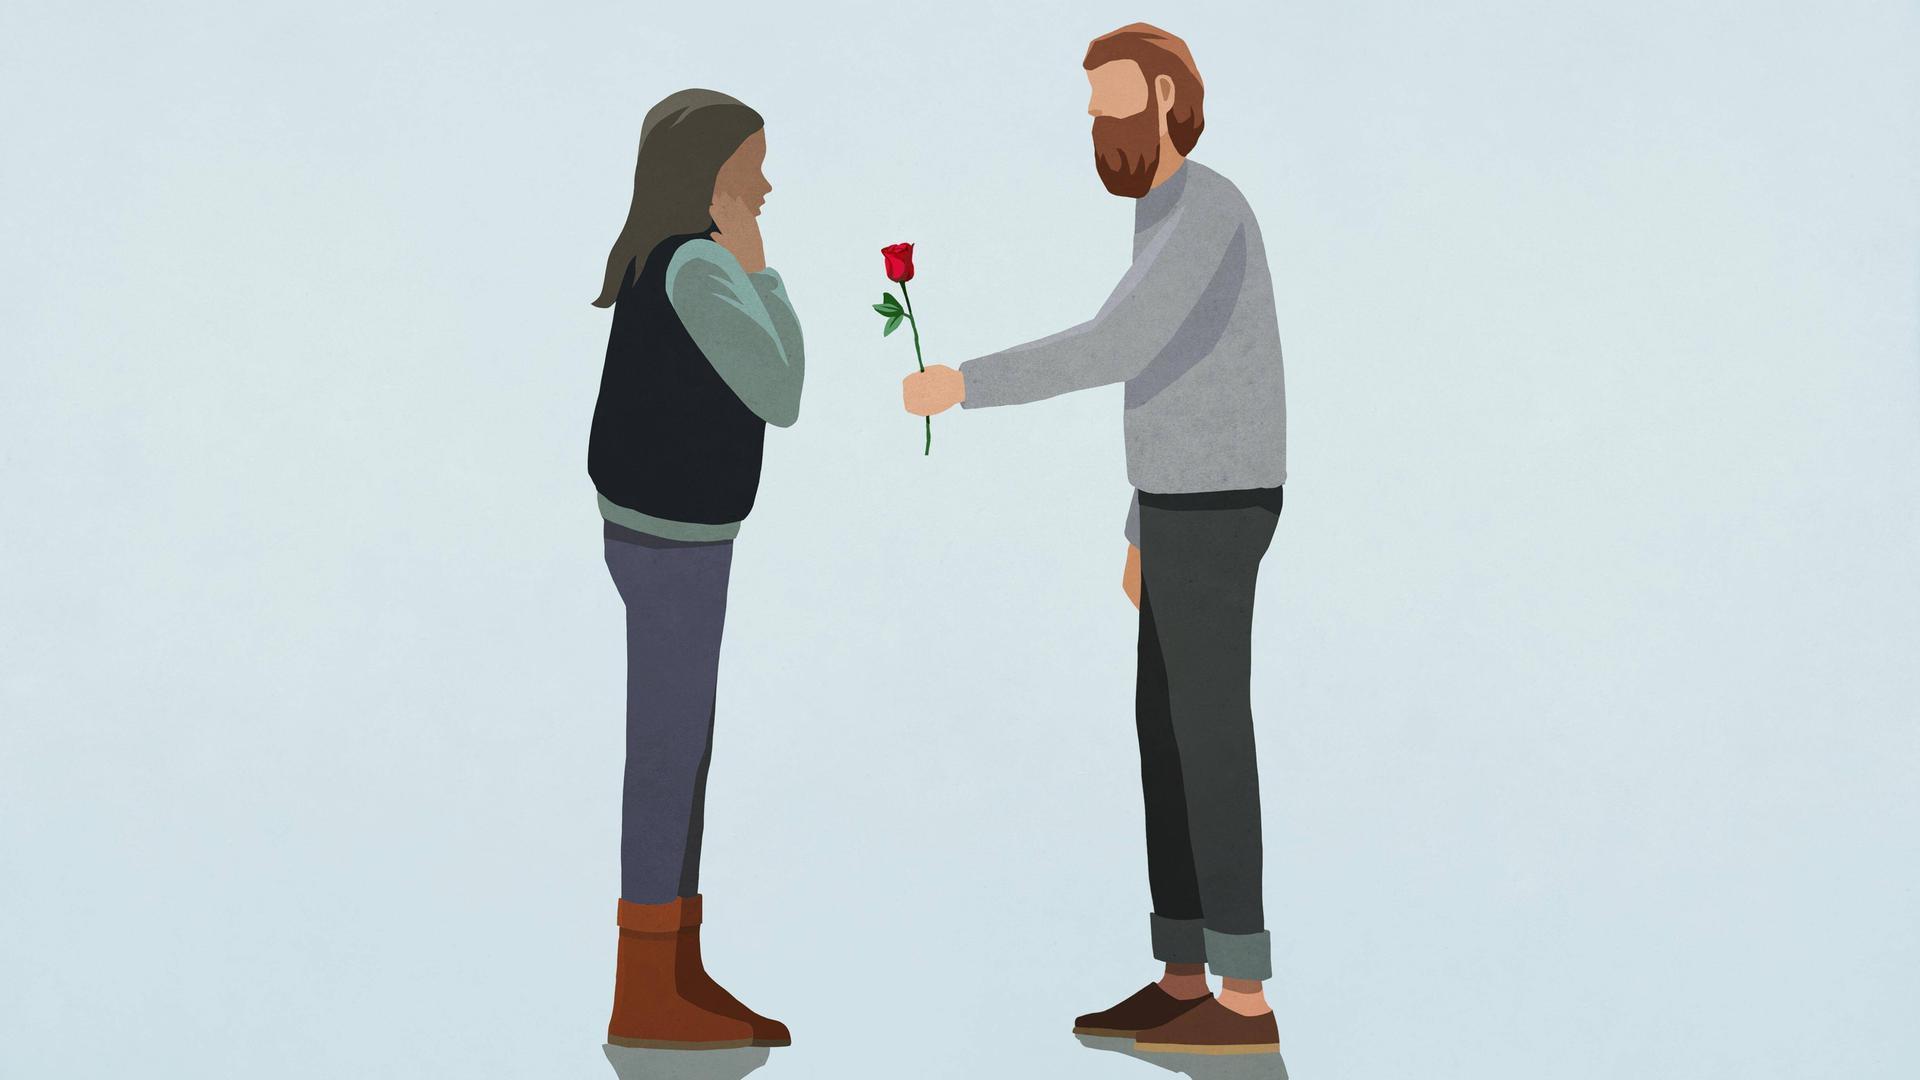 Illustration eines Mannes, der einer Frau gegenüber steht, und ihr eine Rose reicht.